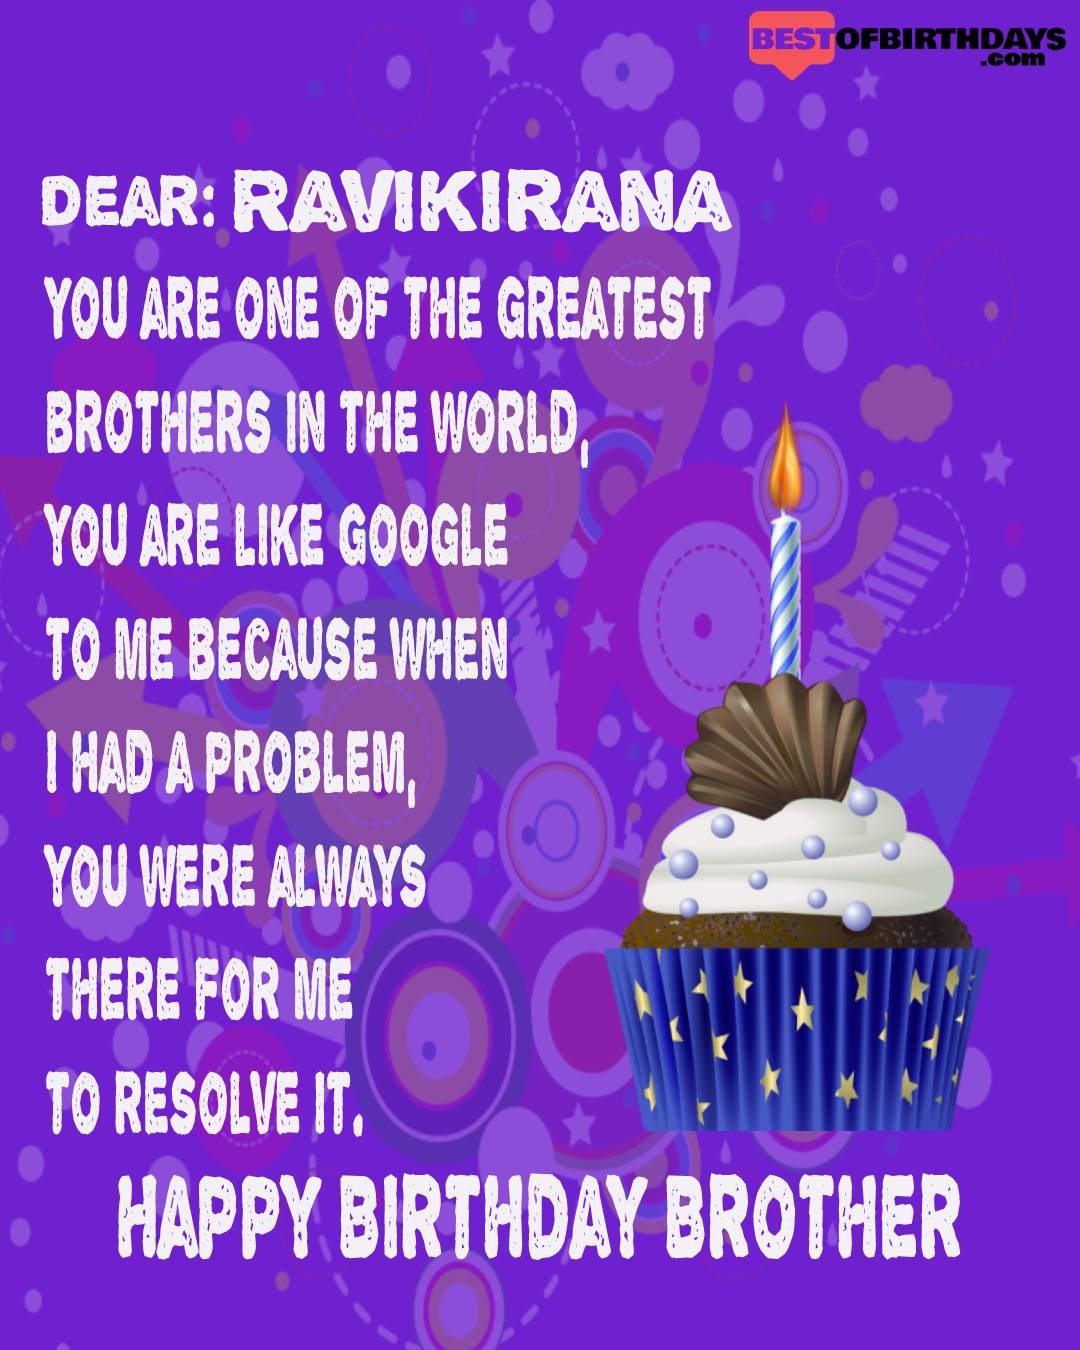 Happy birthday ravikirana bhai brother bro